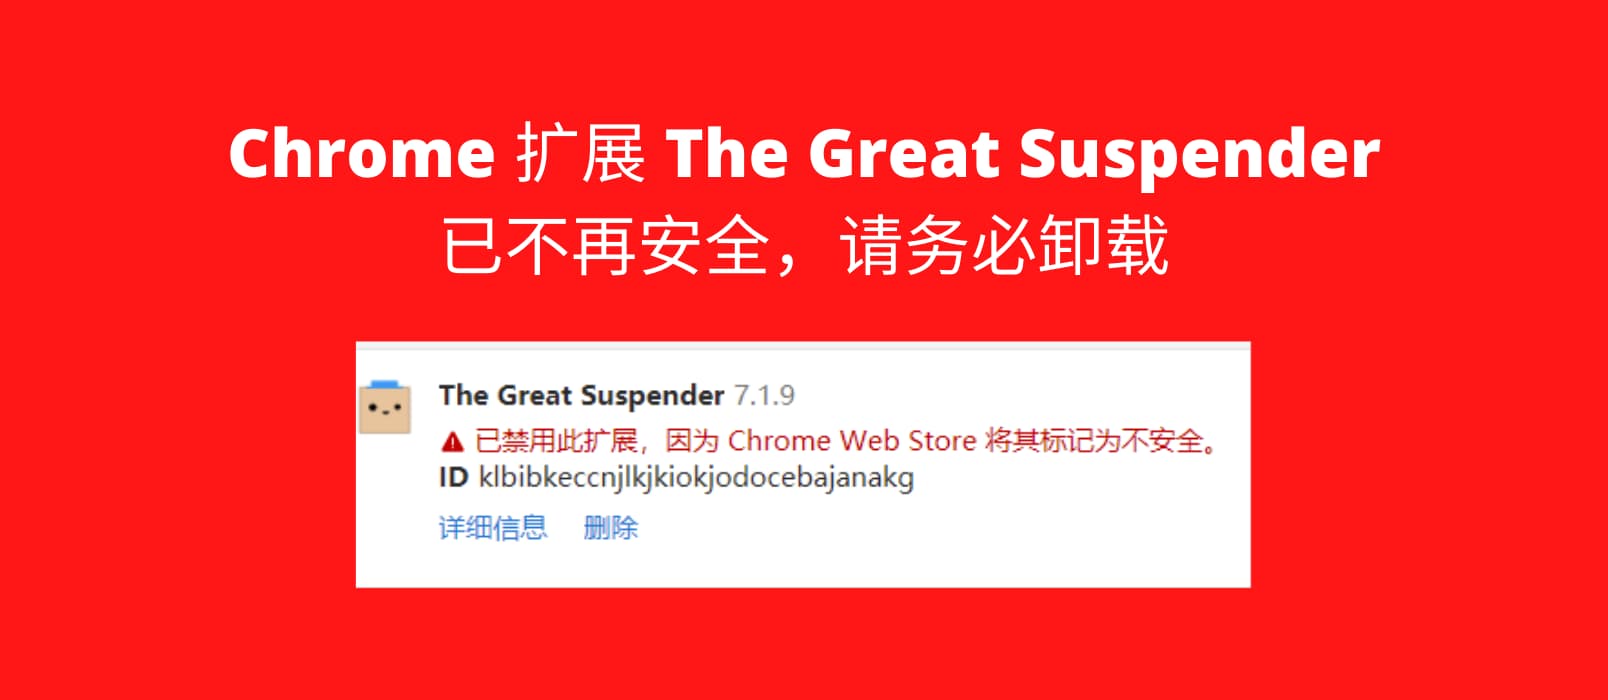 著名 Chrome 多标签页扩展 The Great Suspender 不再安全已被下架，请务必卸载